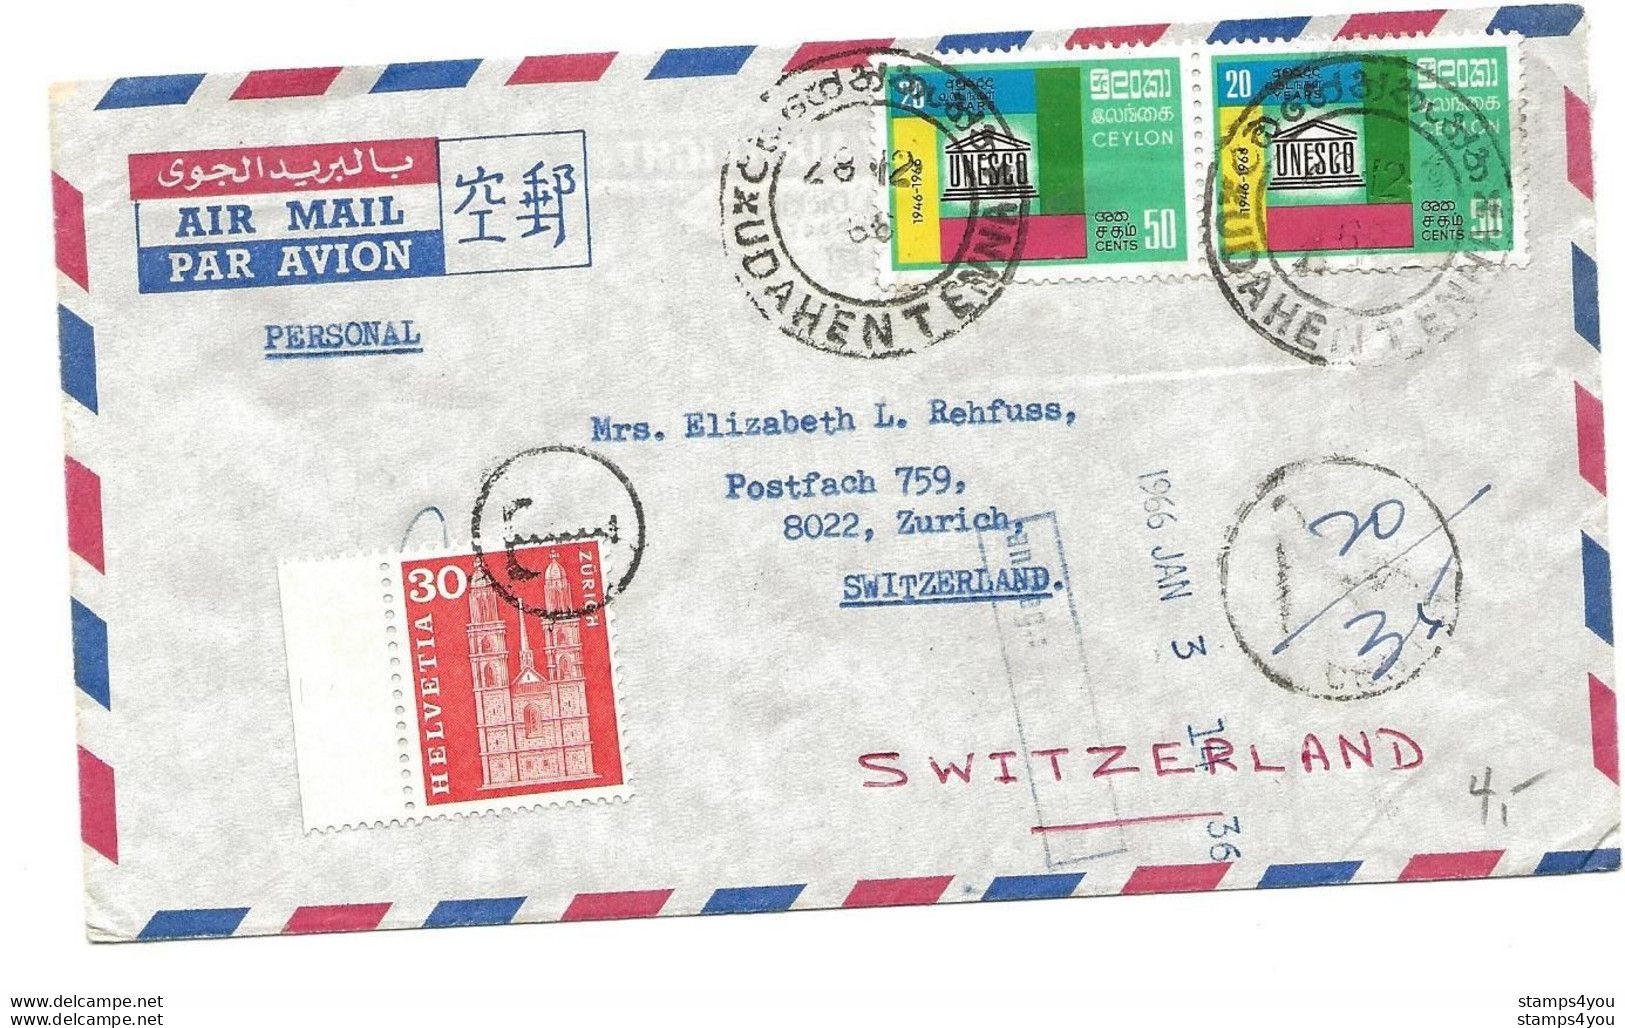 104 - 69 - Enveloppe Envoyée De Ceylon En Suisse - Timbre Suisse Avec Cachet "T" Taxe 1966 - Portomarken